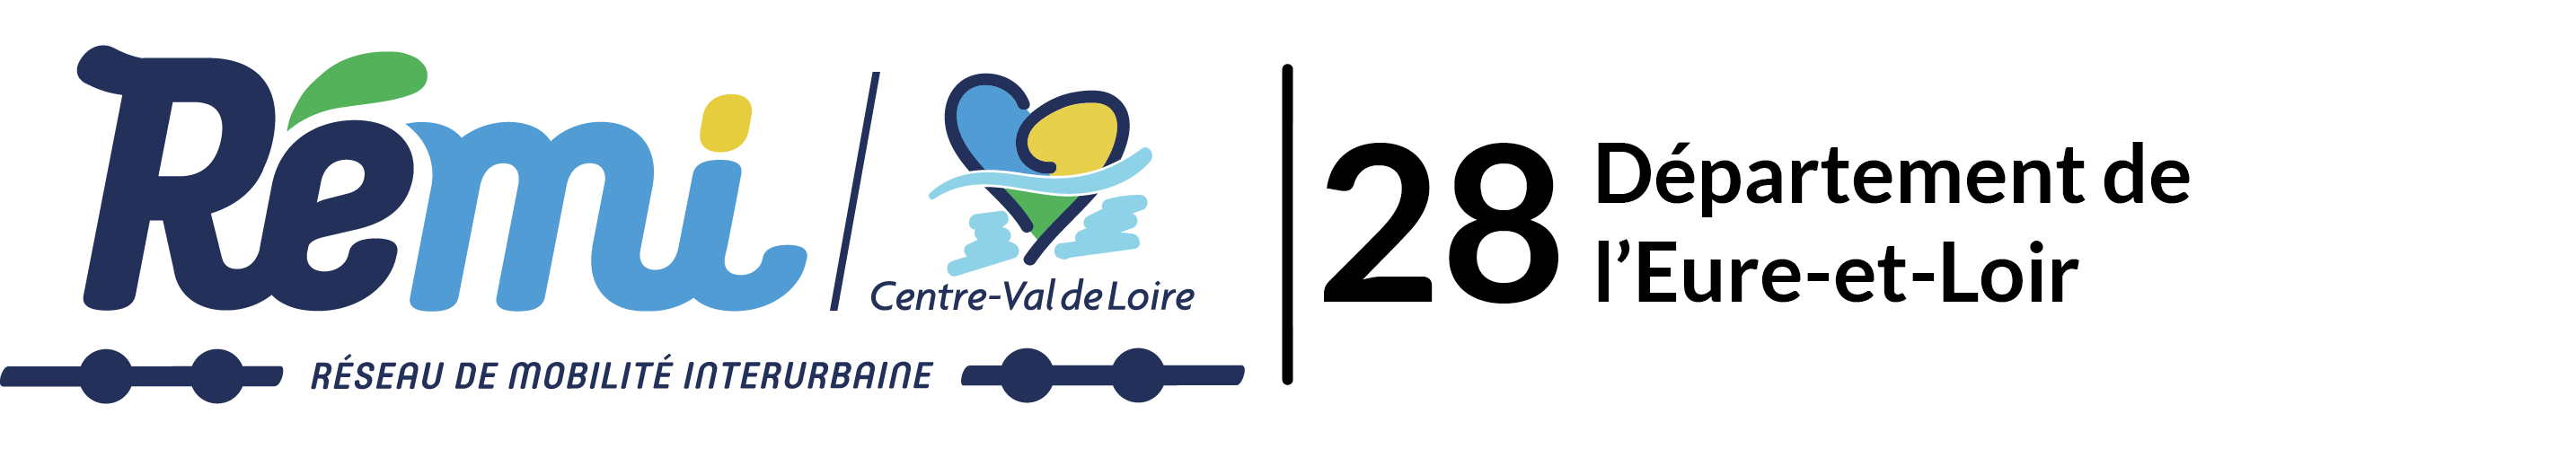 Logo du réseau Rémi 28